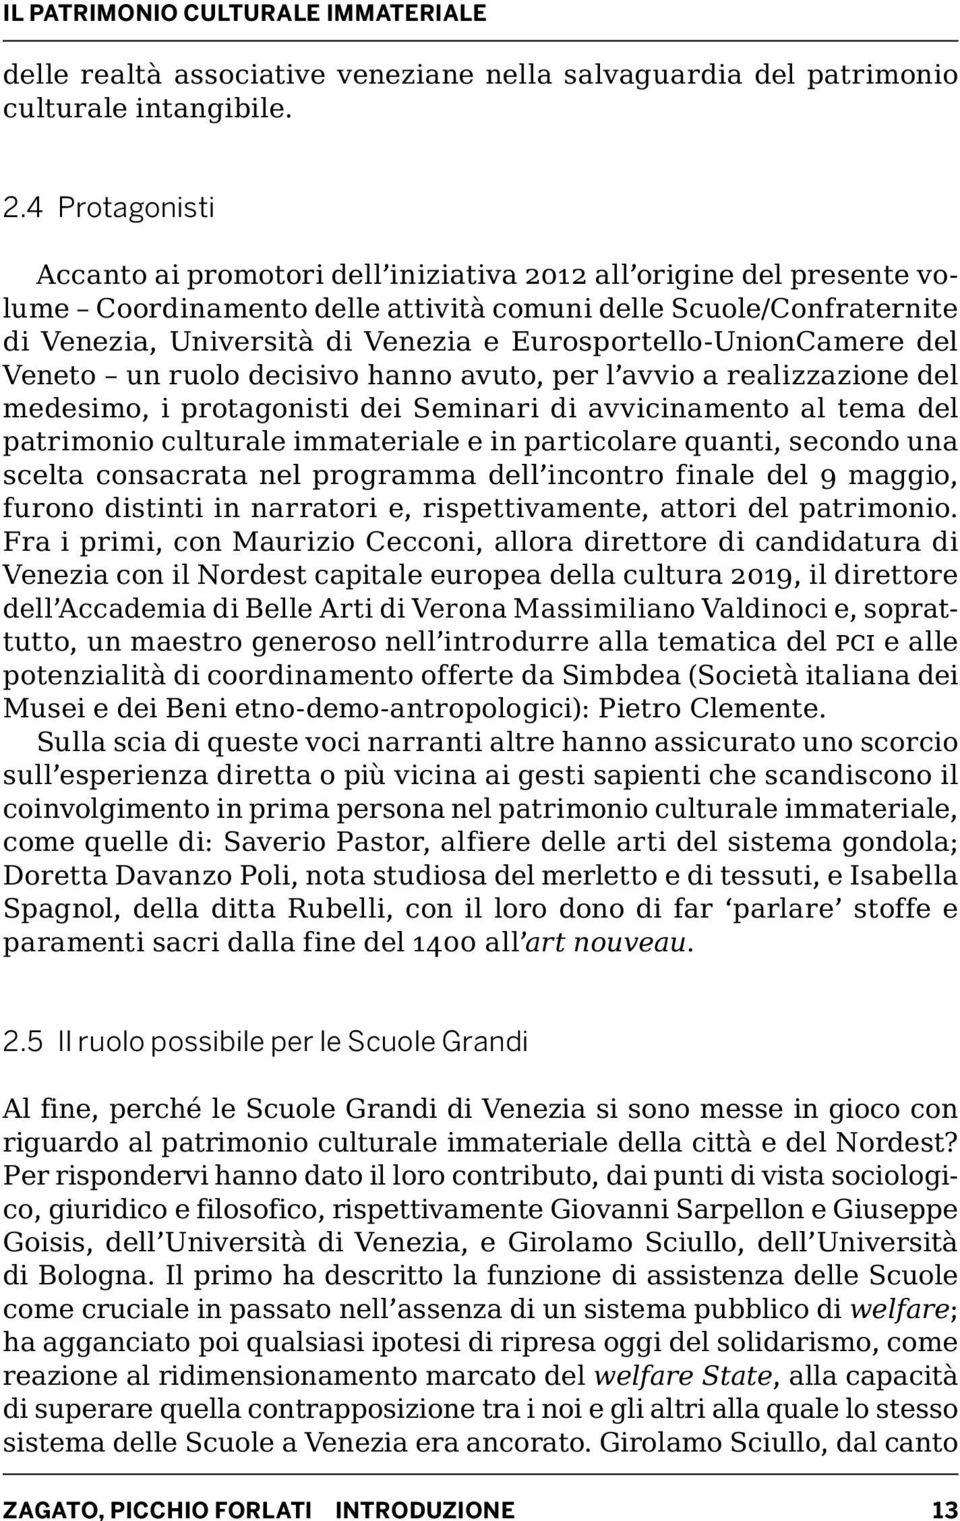 Eurosportello-UnionCamere del Veneto un ruolo decisivo hanno avuto, per l avvio a realizzazione del medesimo, i protagonisti dei Seminari di avvicinamento al tema del patrimonio culturale immateriale